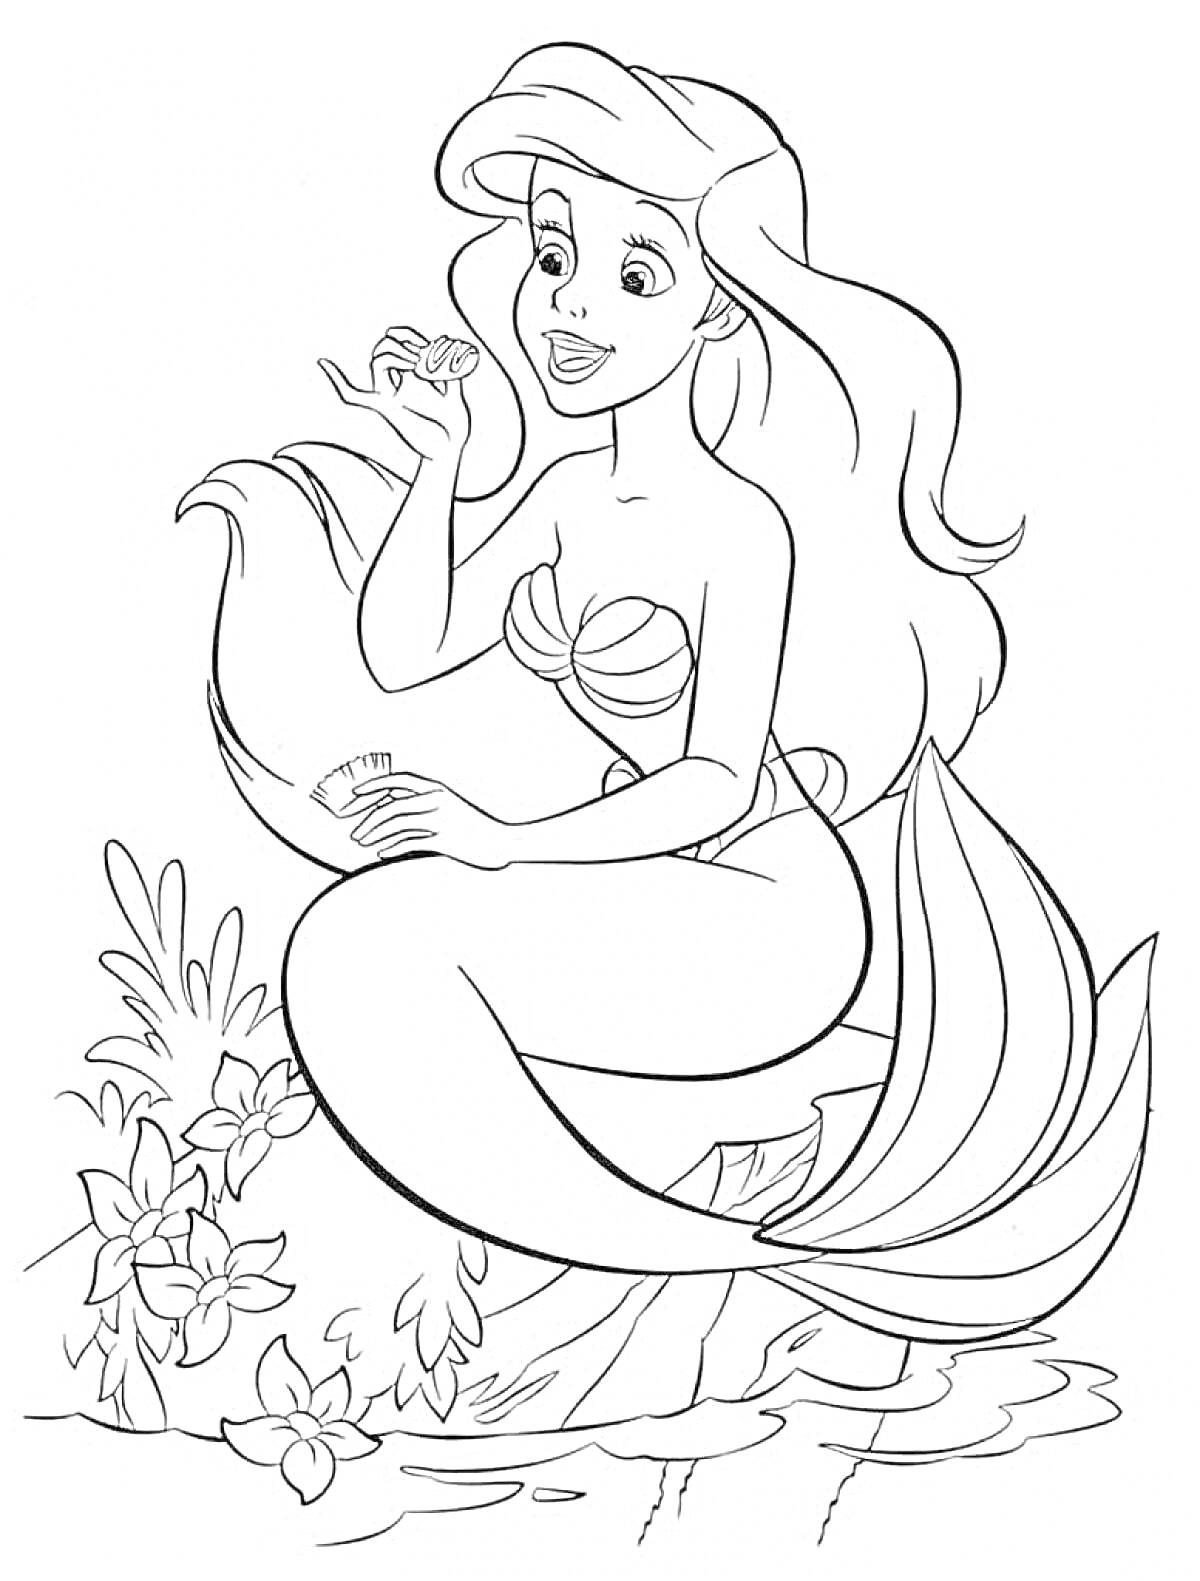 Раскраска Русалочка с длинными волосами, сидящая на камне с ракушкой в руке, окруженная подводными растениями.